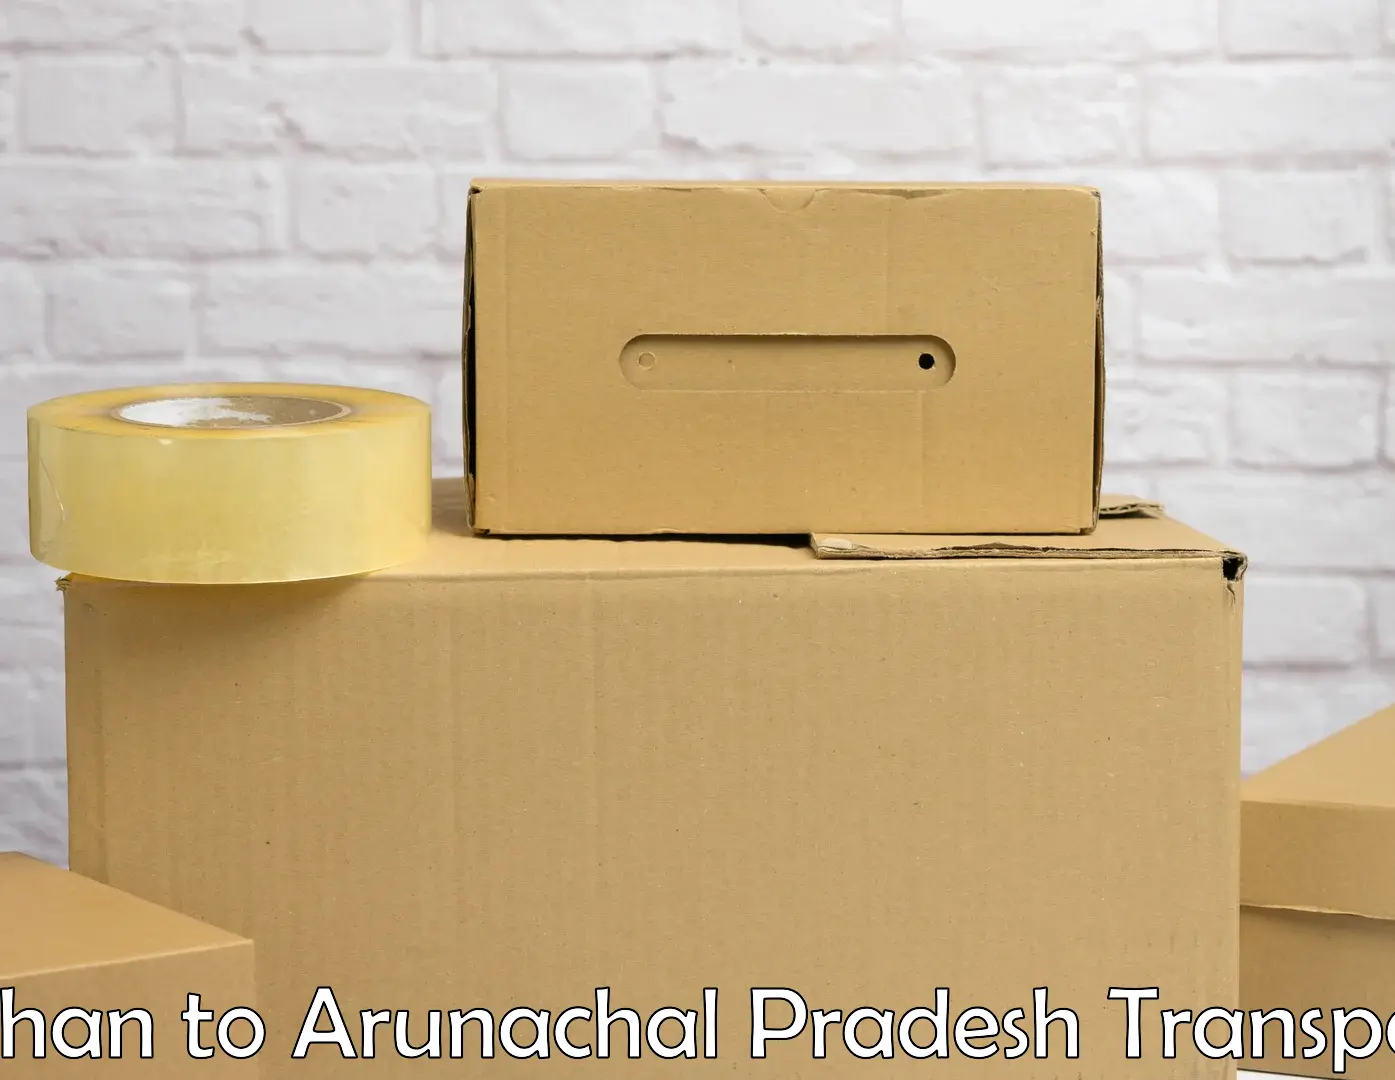 Furniture transport service Rehan to Arunachal Pradesh